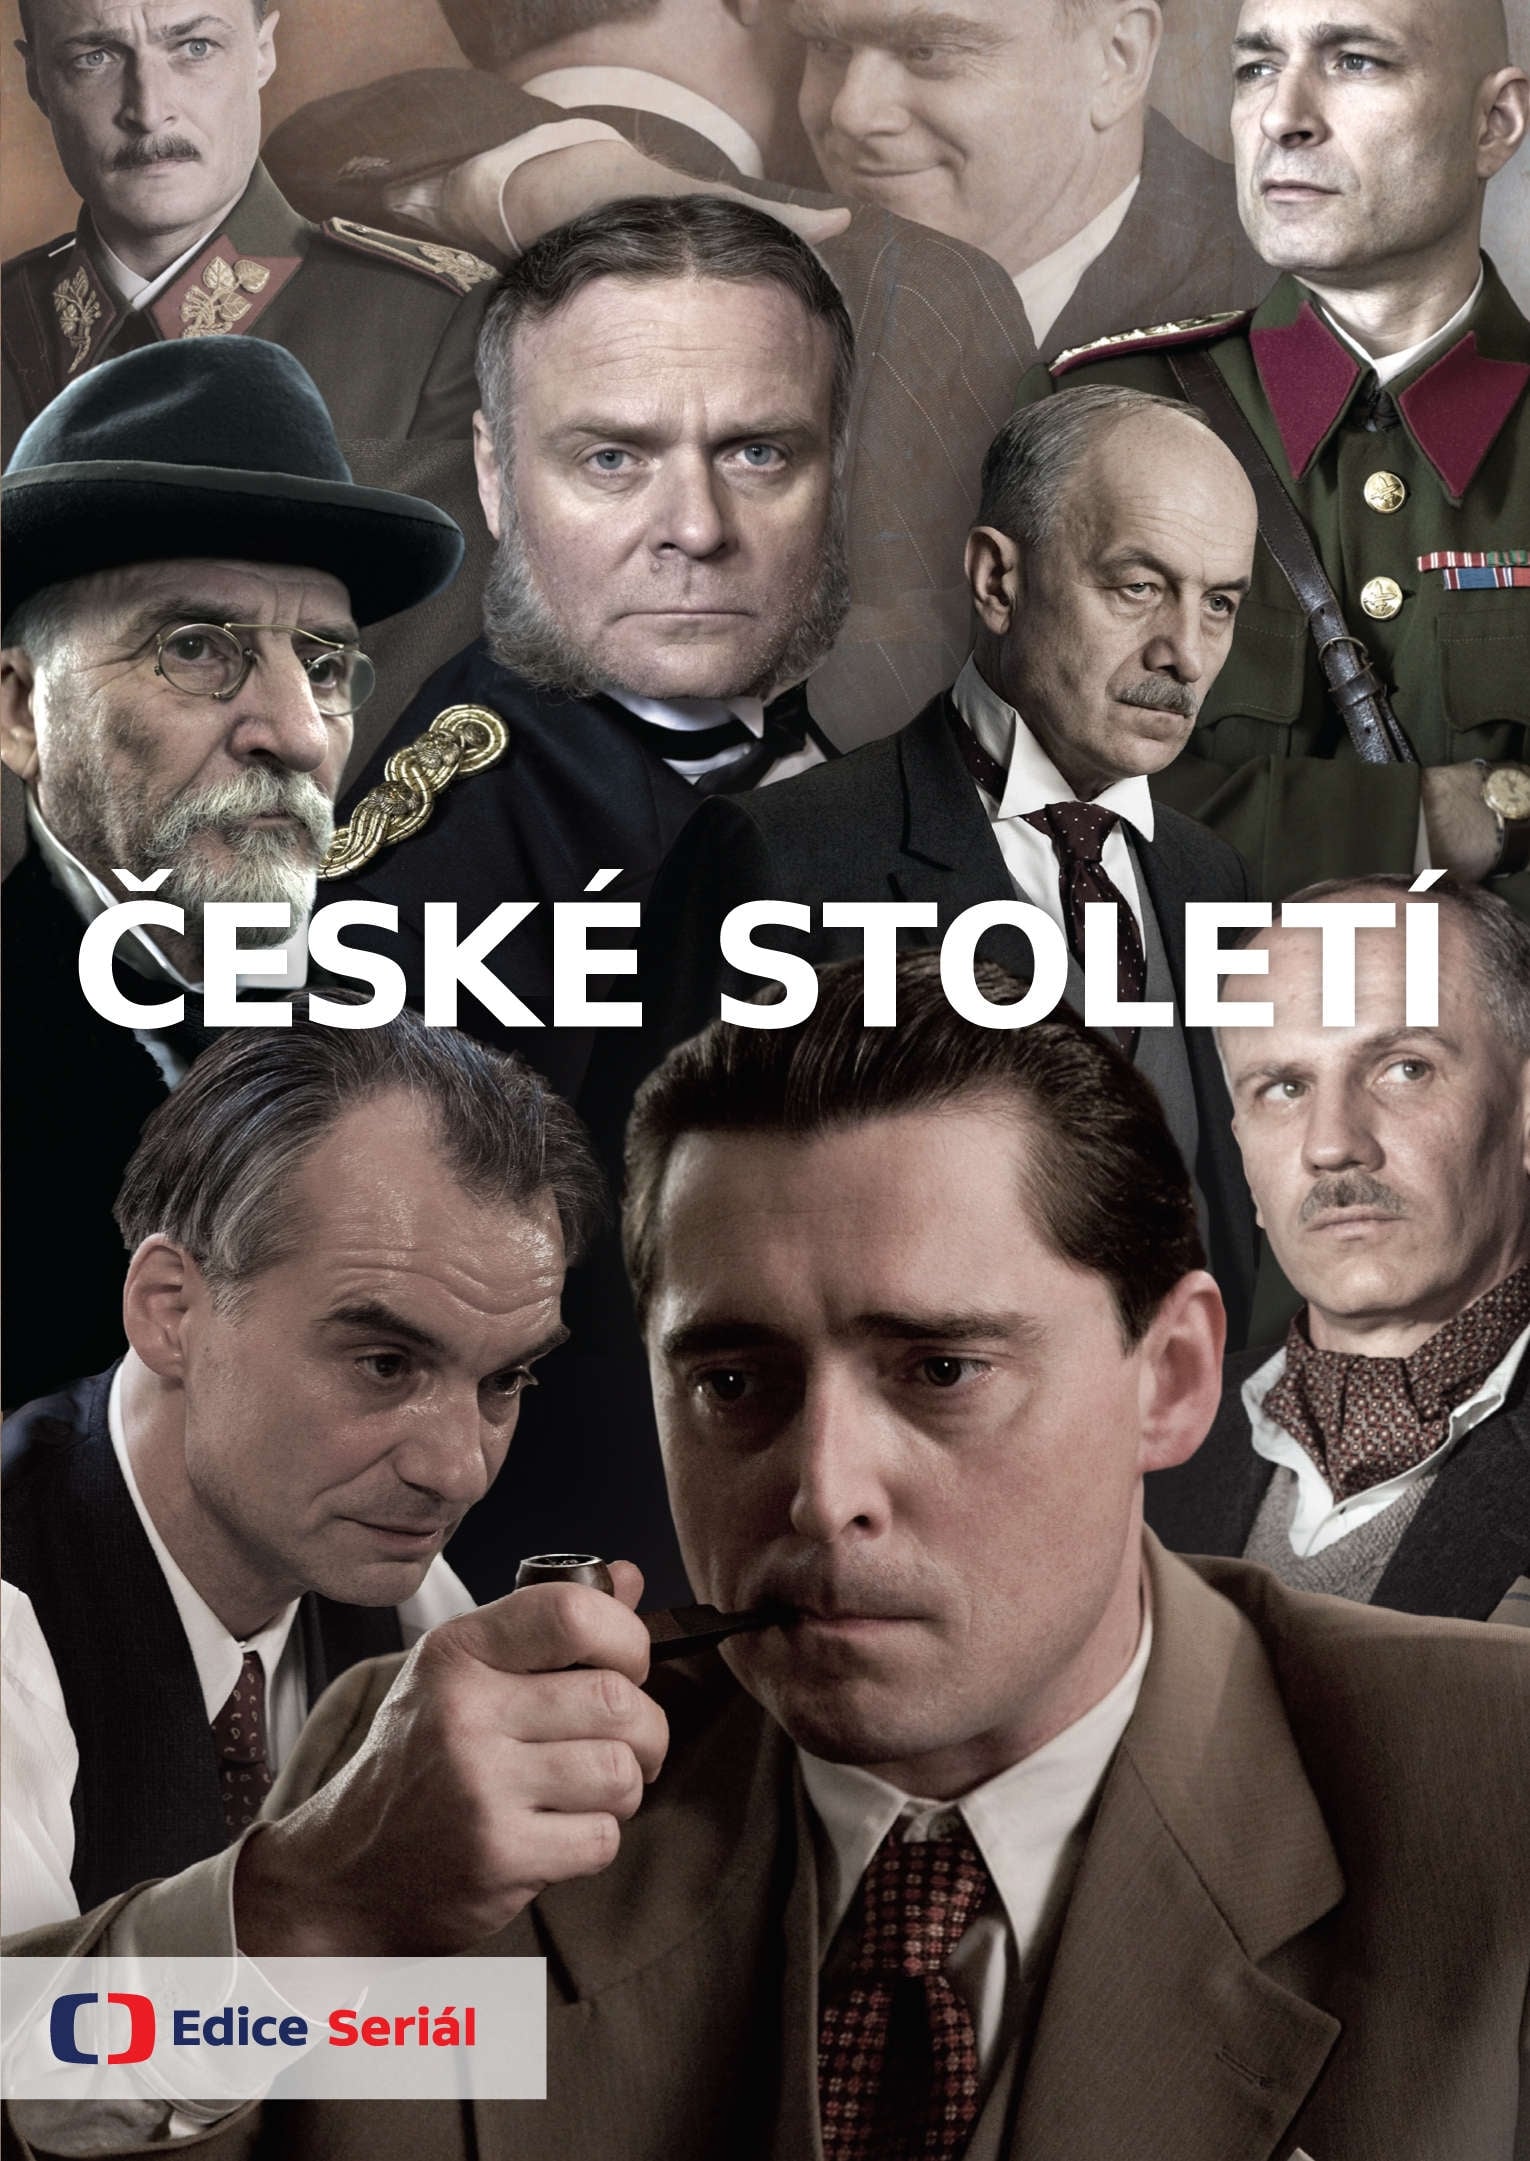 Plakát pro film “České století”